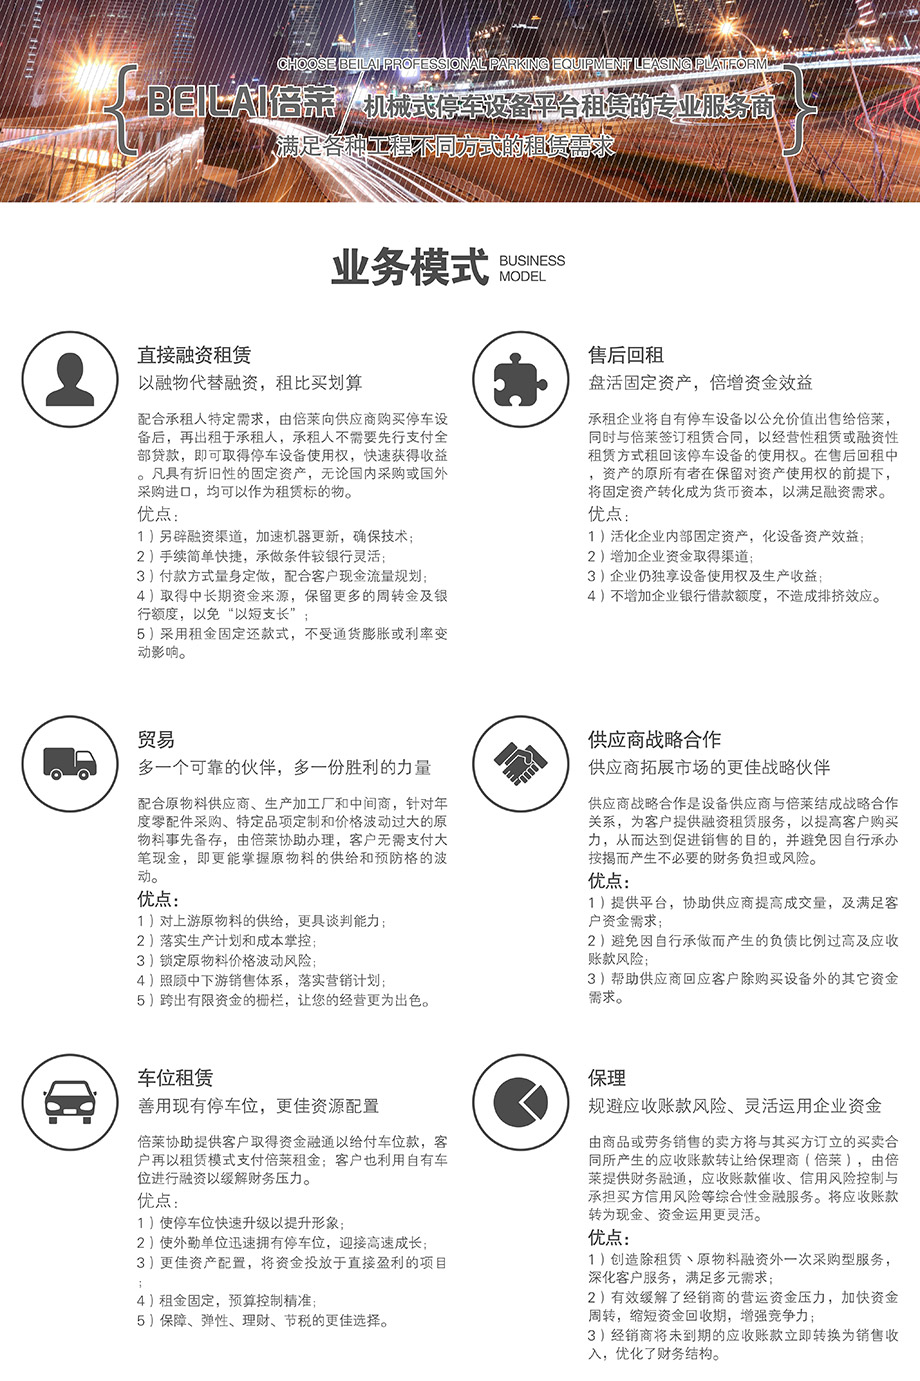 重庆昆明机械立体停车位设备租赁业务模式满足各种工程租赁需求